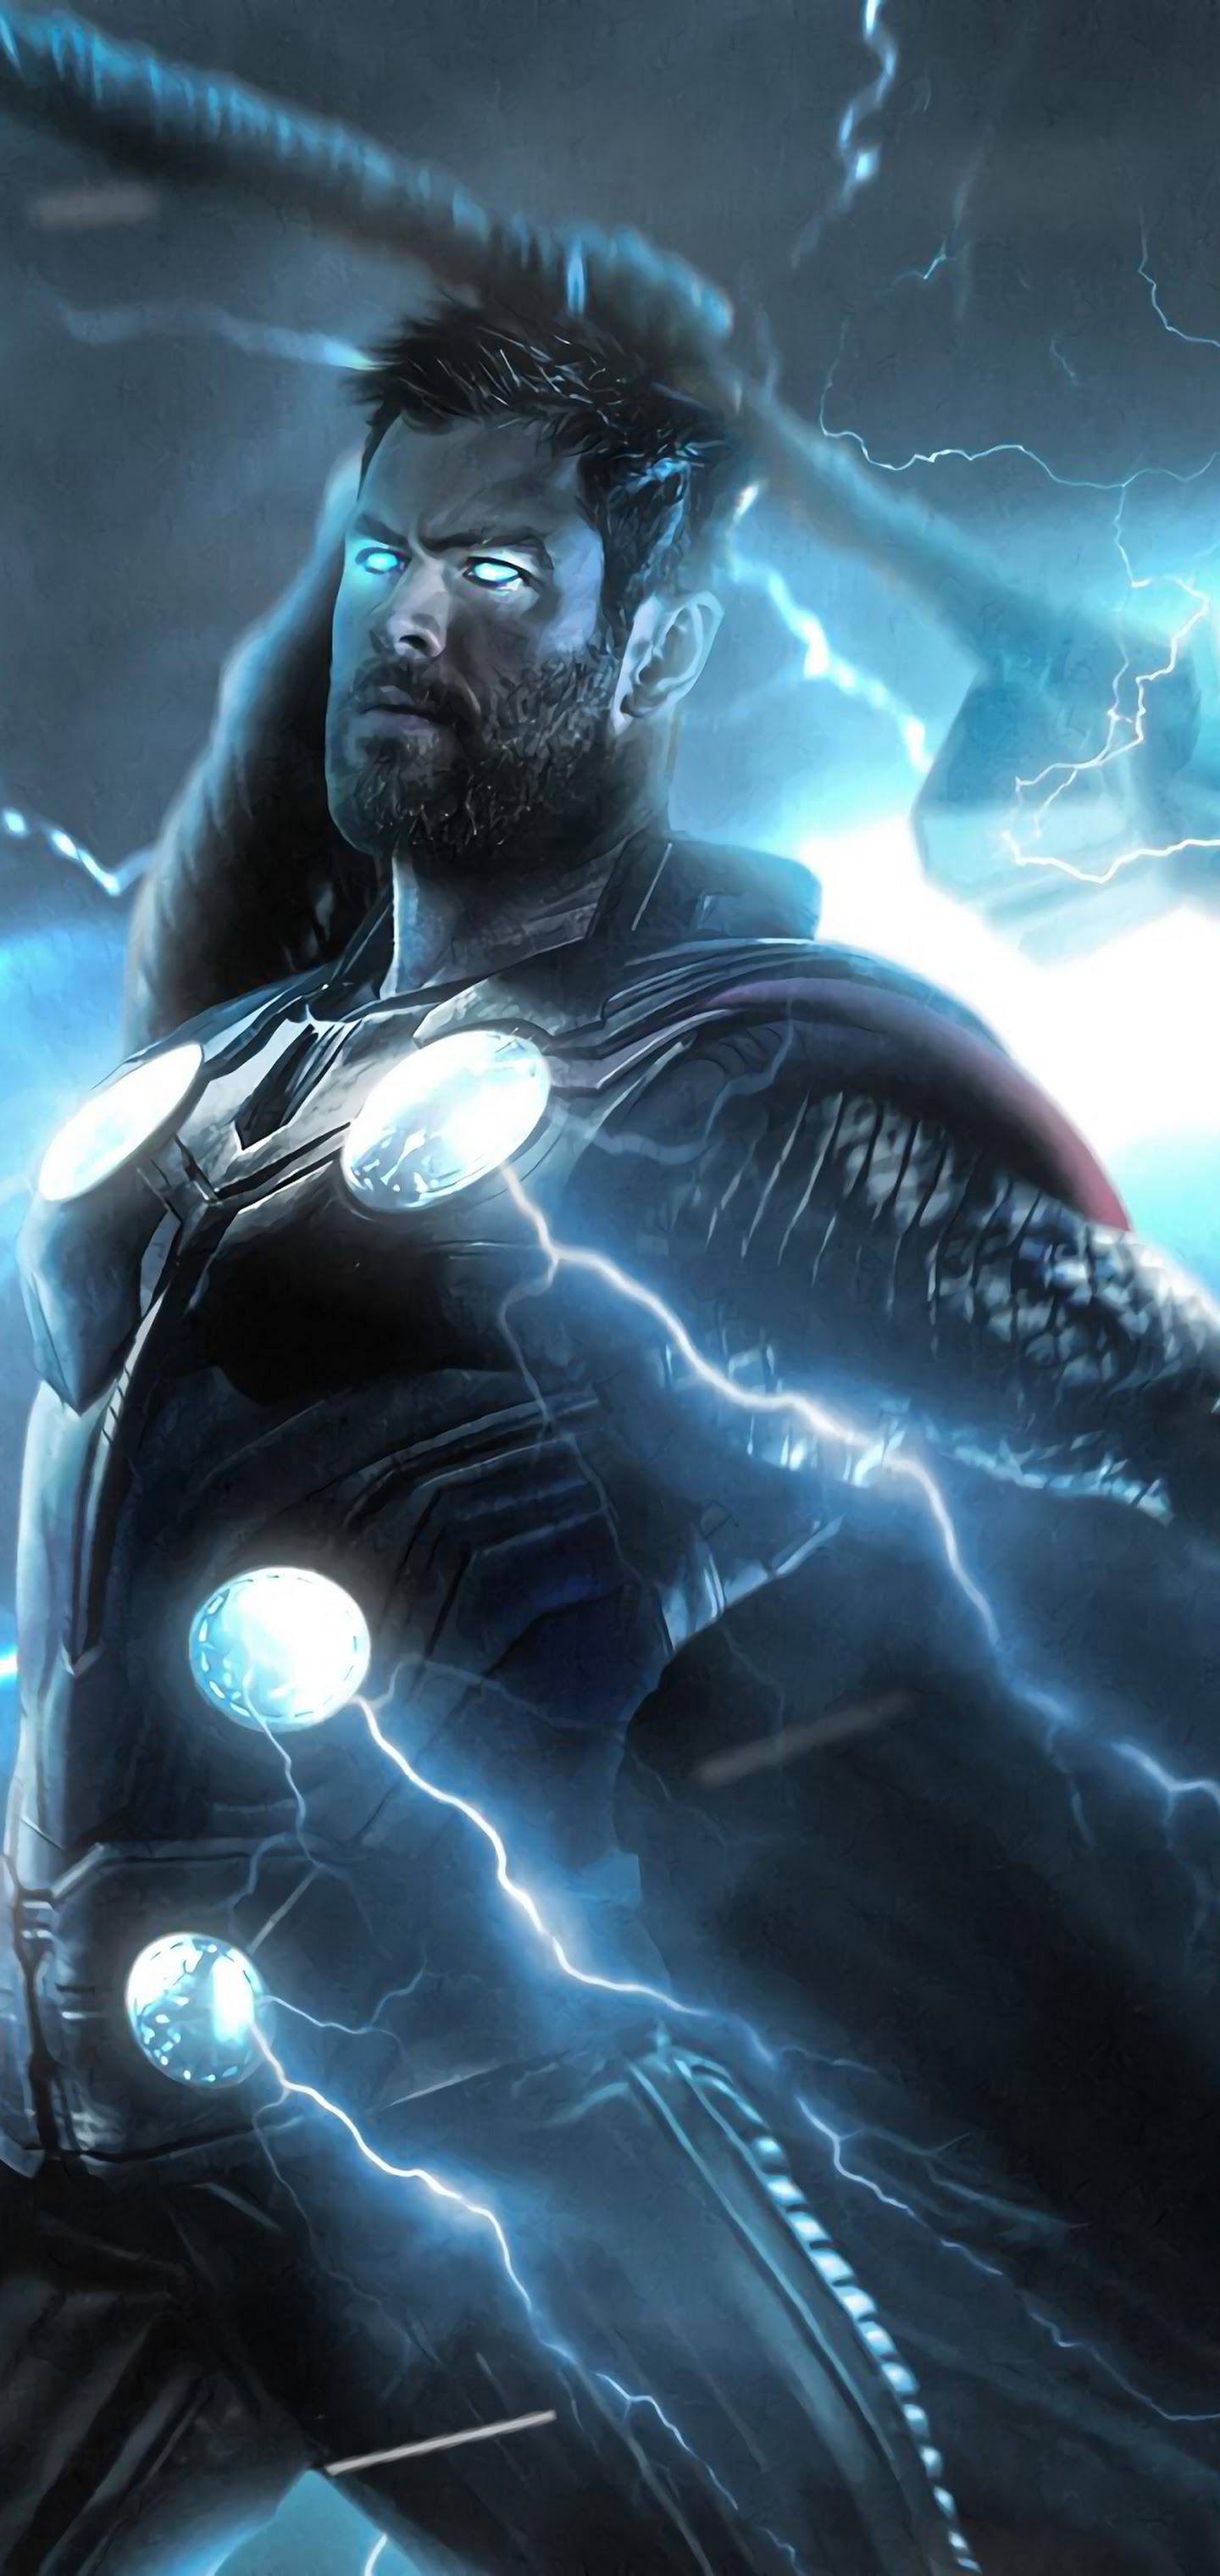 Avengers: Endgame Thor Strombreaker Axe Lightning 4K Wallpaper